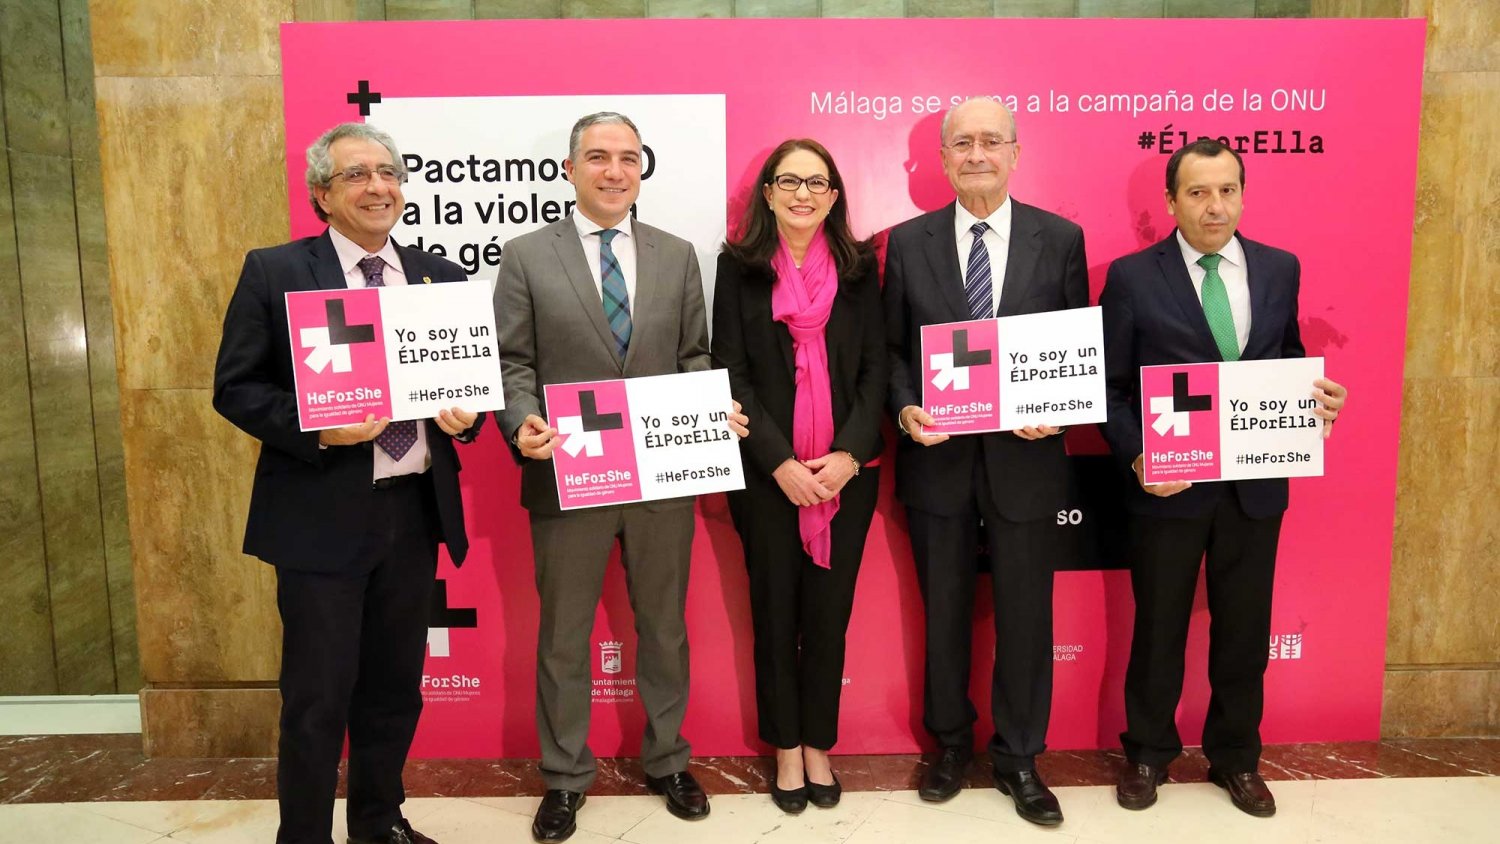 La UMA, junto a varias instituciones de la provincia, se adhiere a la campaña de la ONU ElporELLA/HeForShe